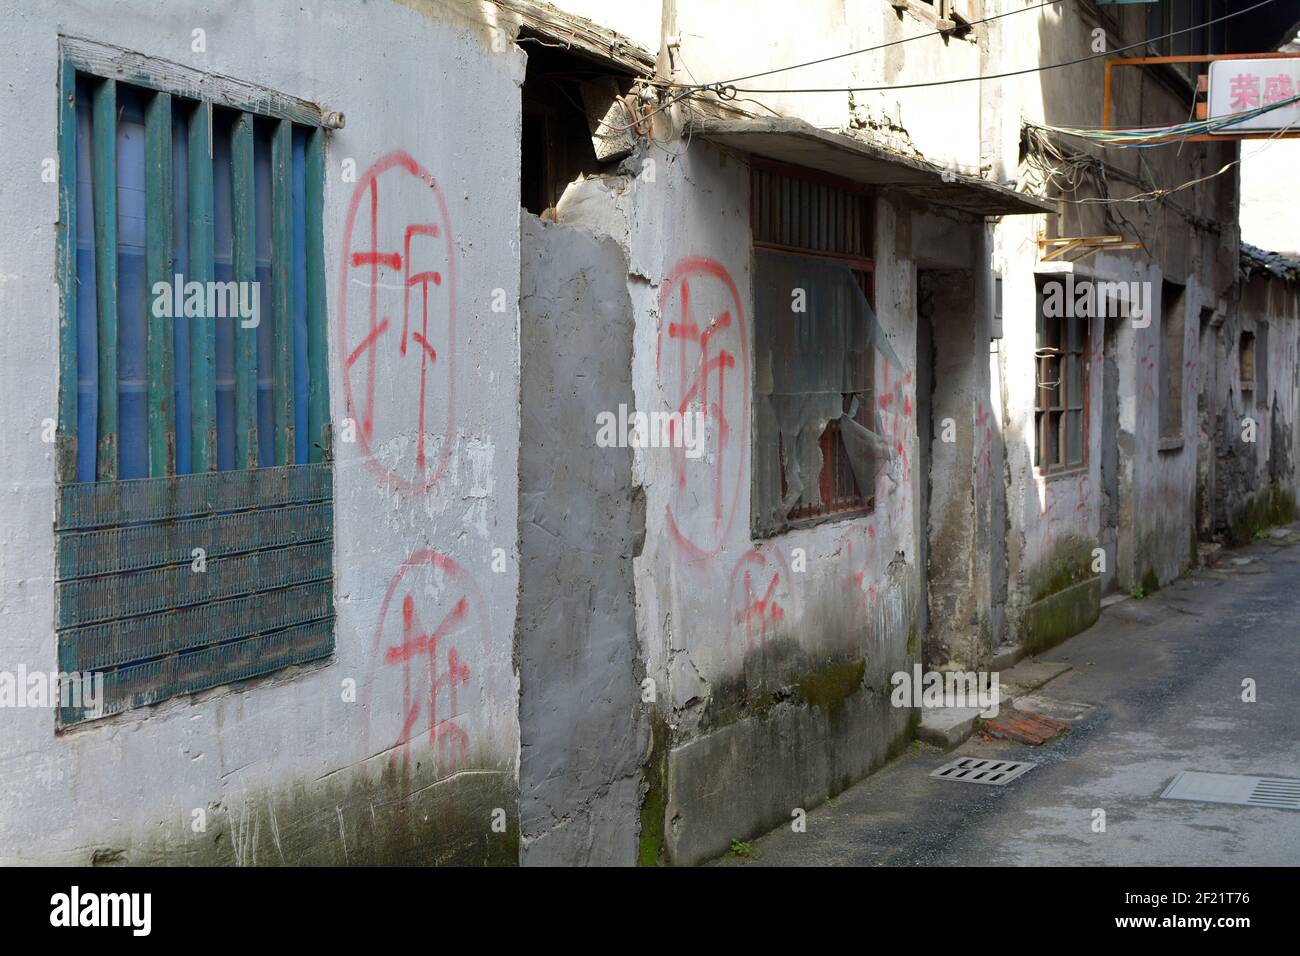 Dipinto di rosso carattere cinese 'cai', che significa demolizione. Le case sono mirate, residenti spostati fuori, porte bricked in su poi la demolizione inizia a un certo punto. Foto Stock